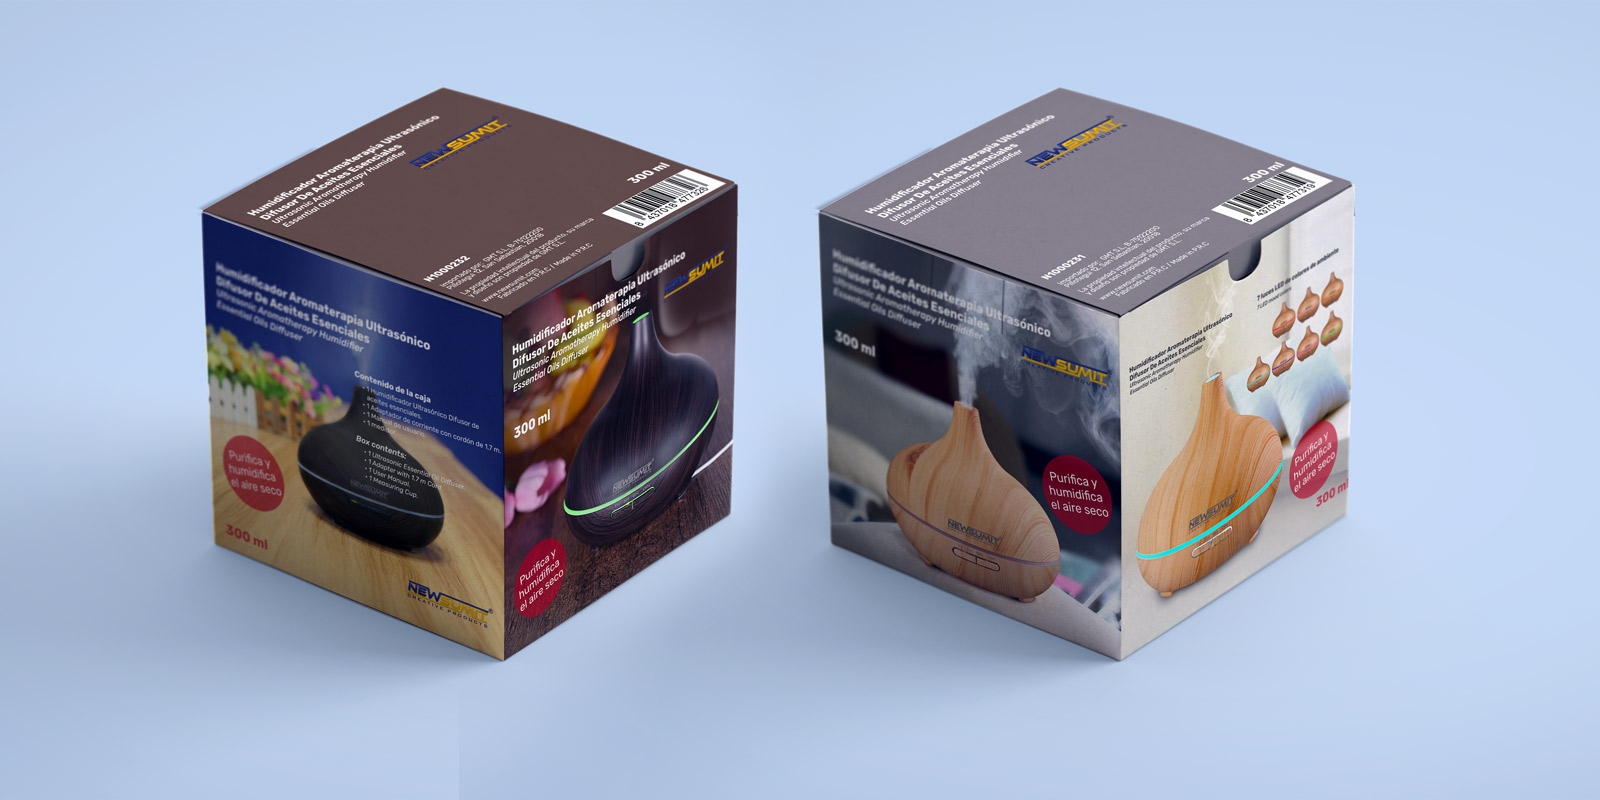 Diseño de packaging cajas humidificador aromaterápia